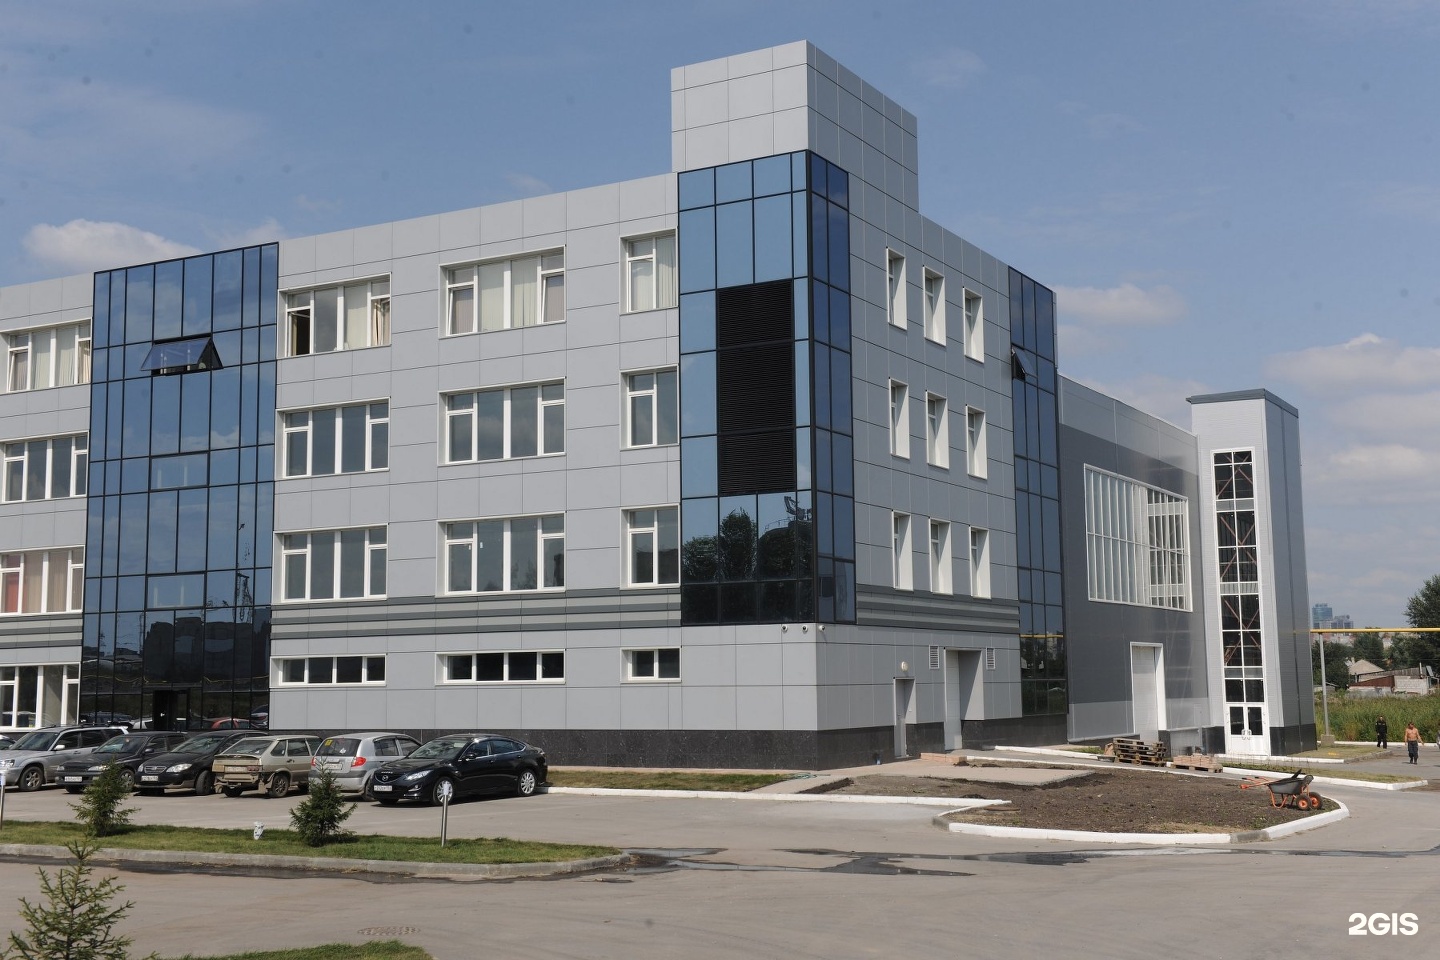 Км д 6. Завод Сибалюкс Новосибирск. Панели Сибалюкс. Завод композитных панелей. Sibalux фасады.